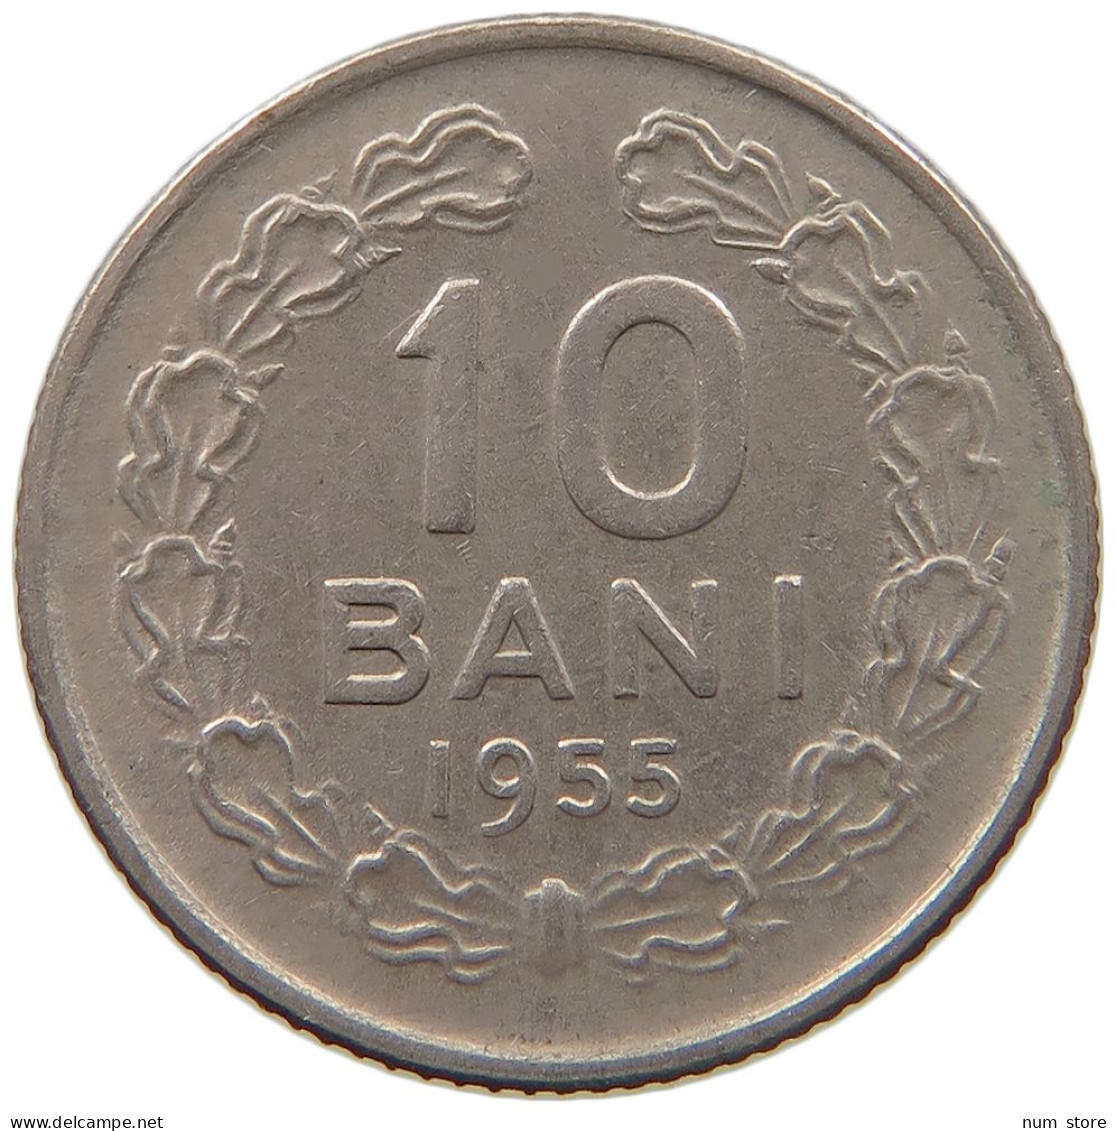 ROMANIA 10 BANI 1955  #s065 0749 - Roumanie